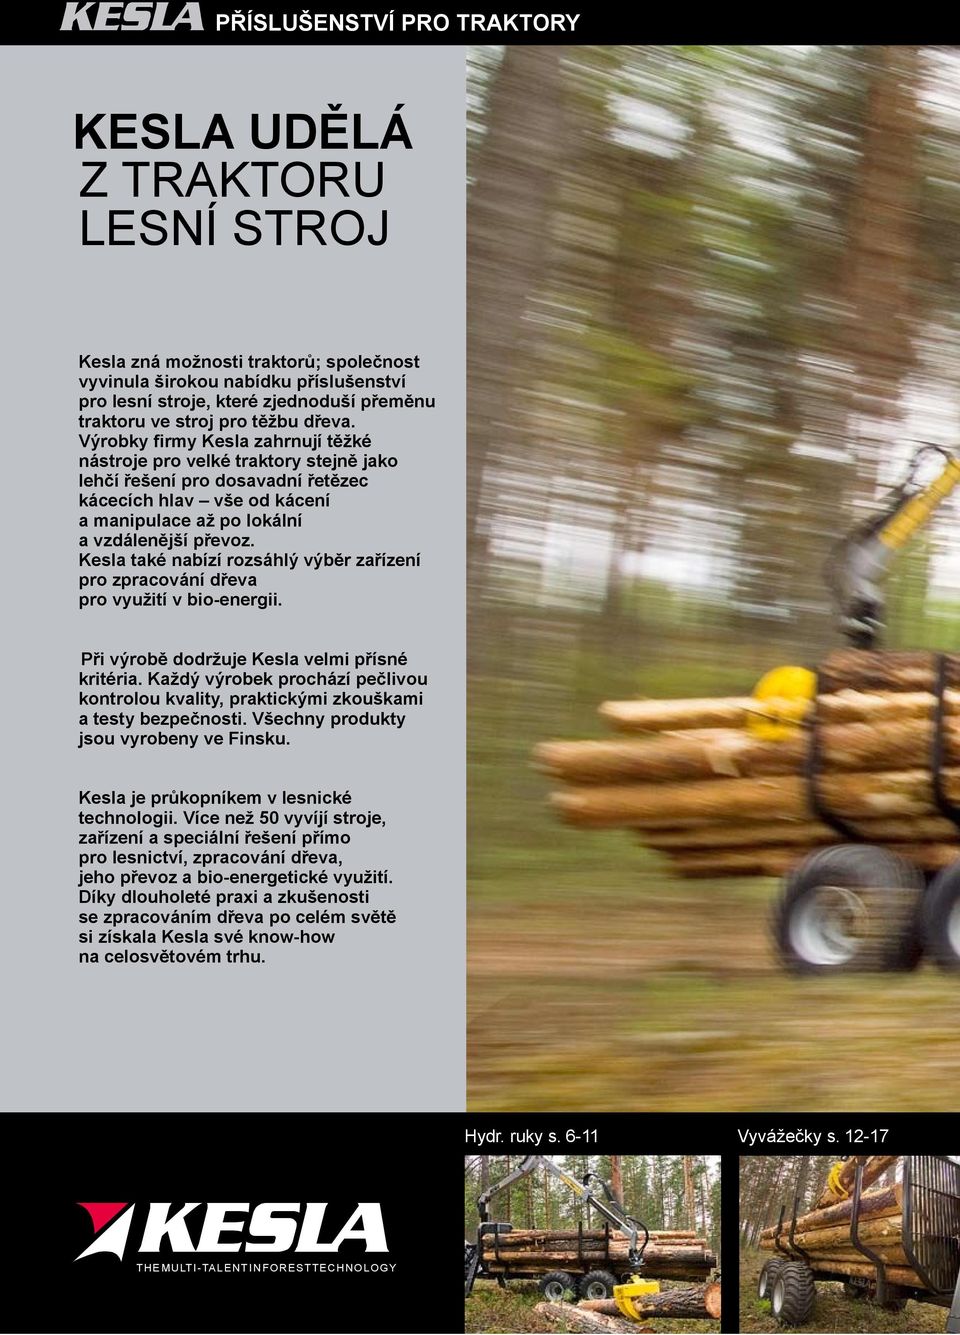 Výrobky firmy Kesla zahrnují těžké nástroje pro velké traktory stejně jako lehčí řešení pro dosavadní řetězec kácecích hlav vše od kácení amanipulace až po lokální avzdálenější převoz.